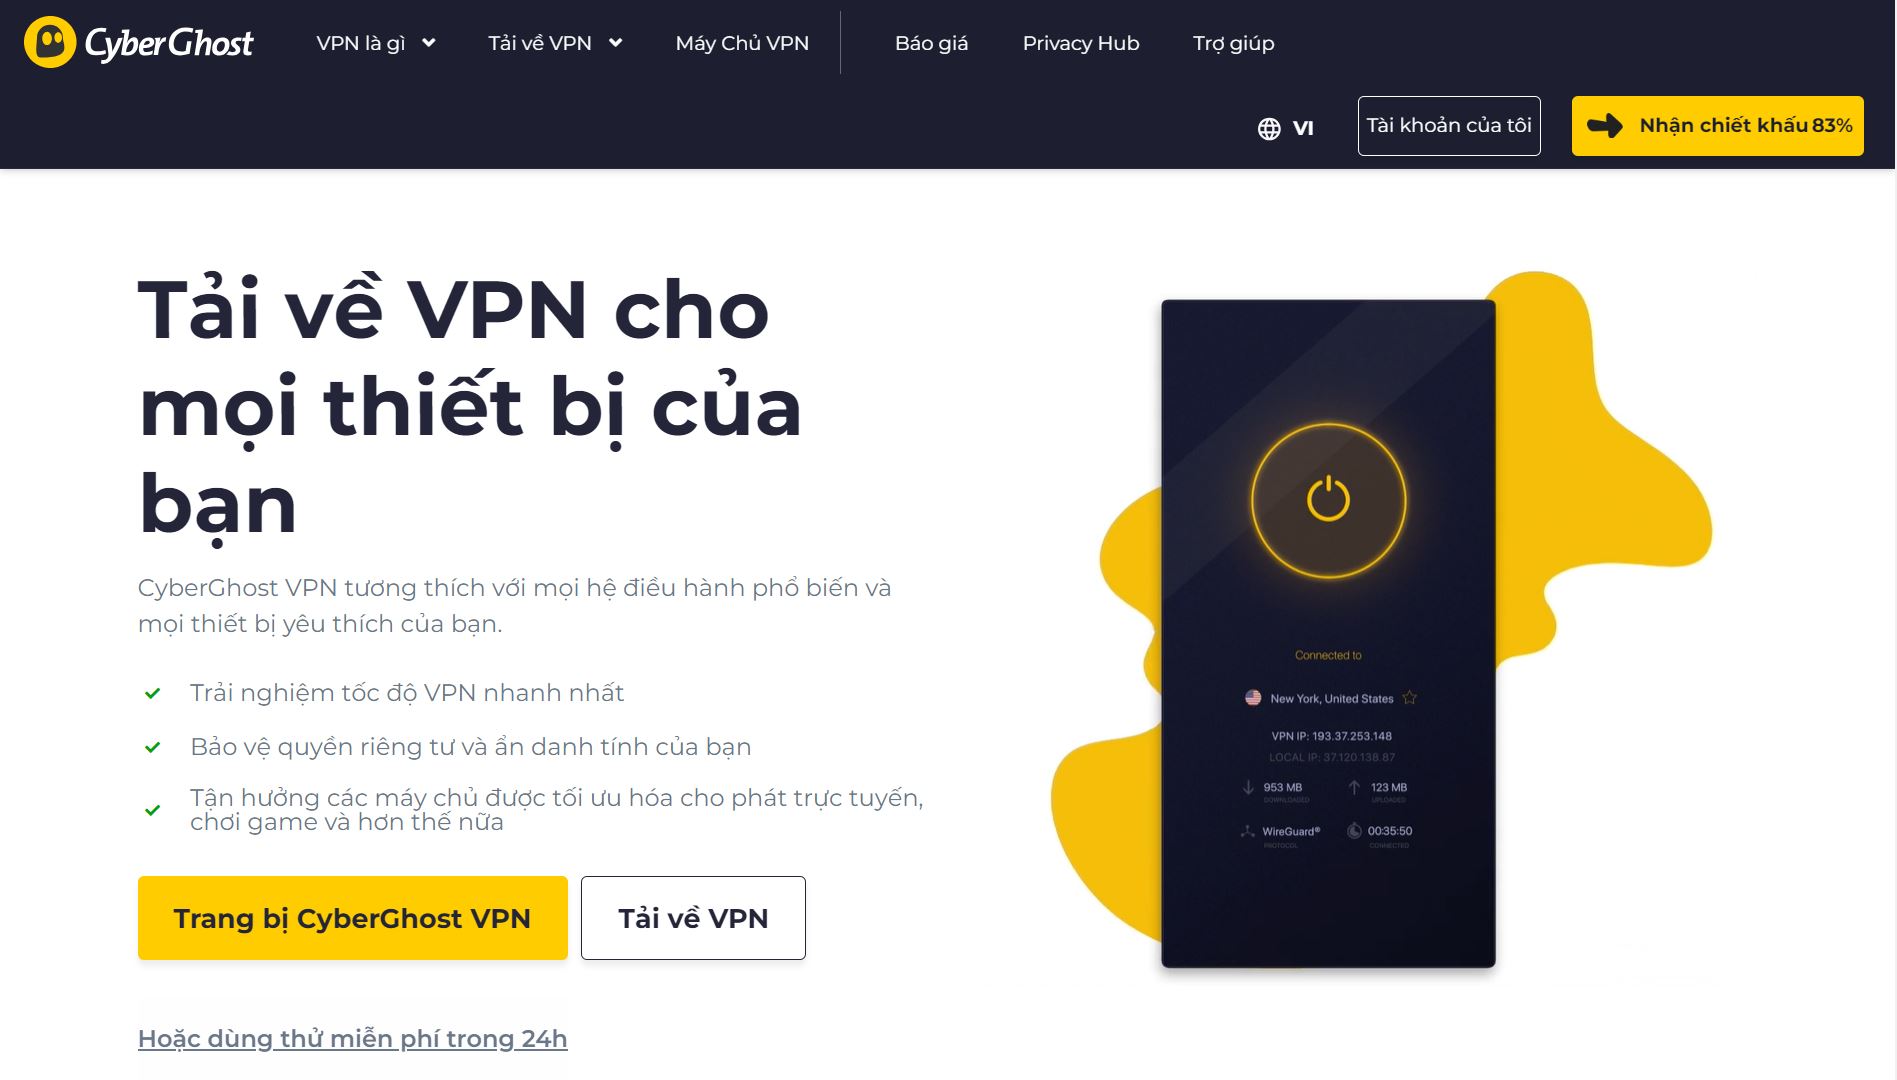 Truy cập trang web chính thức của CyberGhost VPN